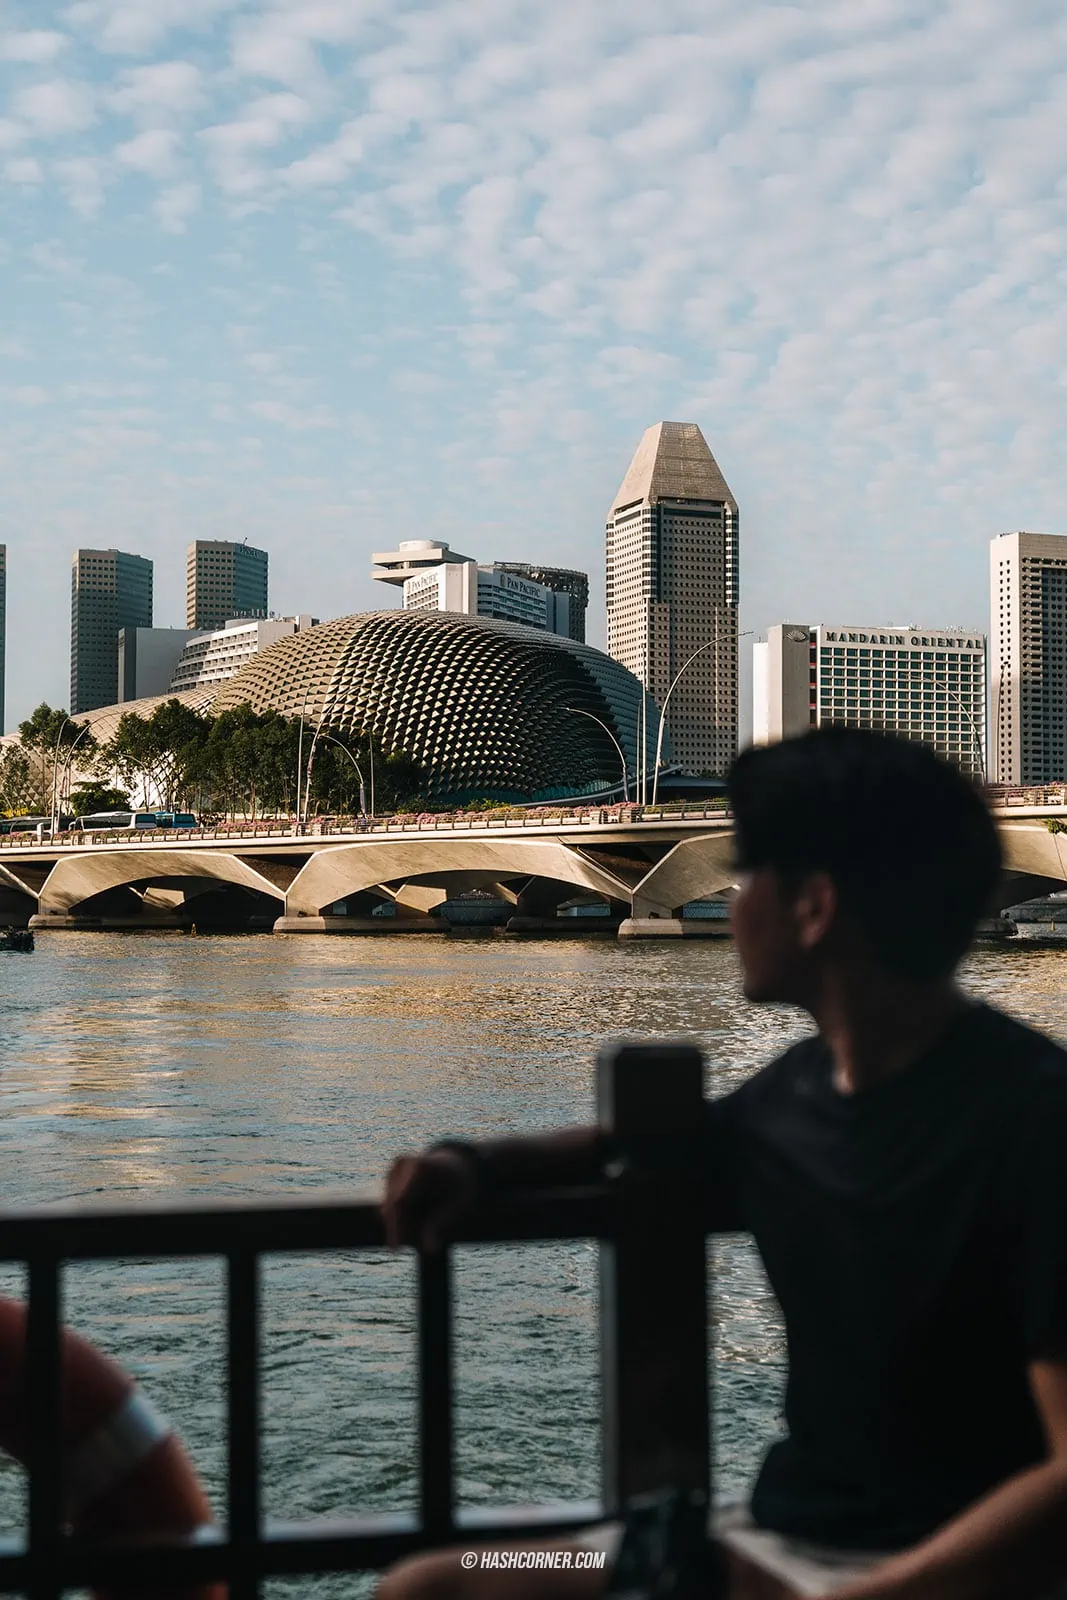 รีวิว สิงคโปร์ (Singapore) : 9 ที่เที่ยวและกิจกรรมห้ามพลาด